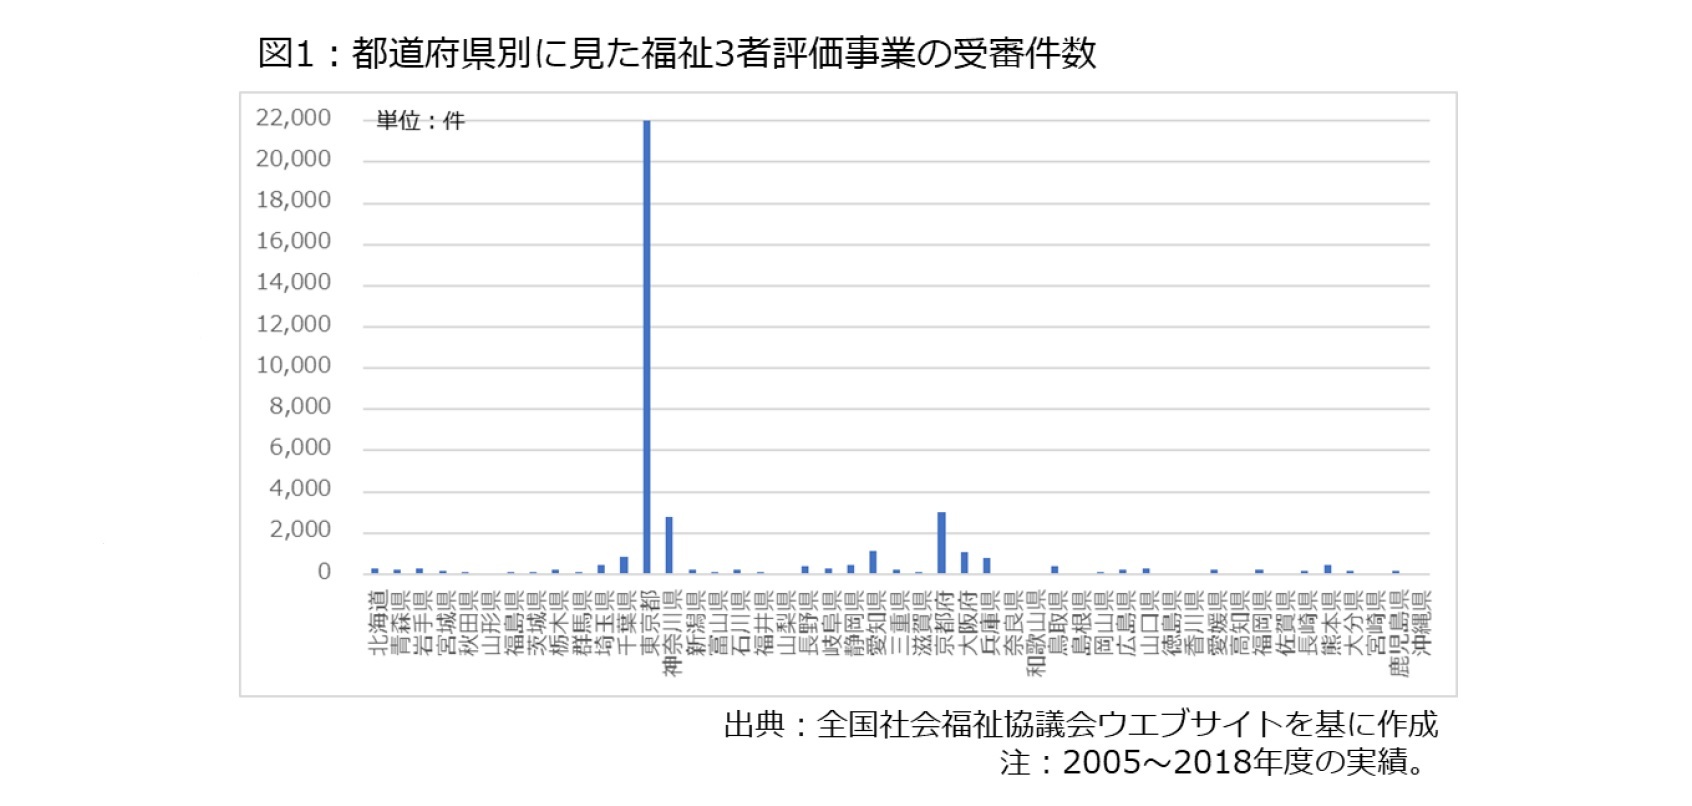 図1：都道府県別に見た福祉3者評価事業の受審件数